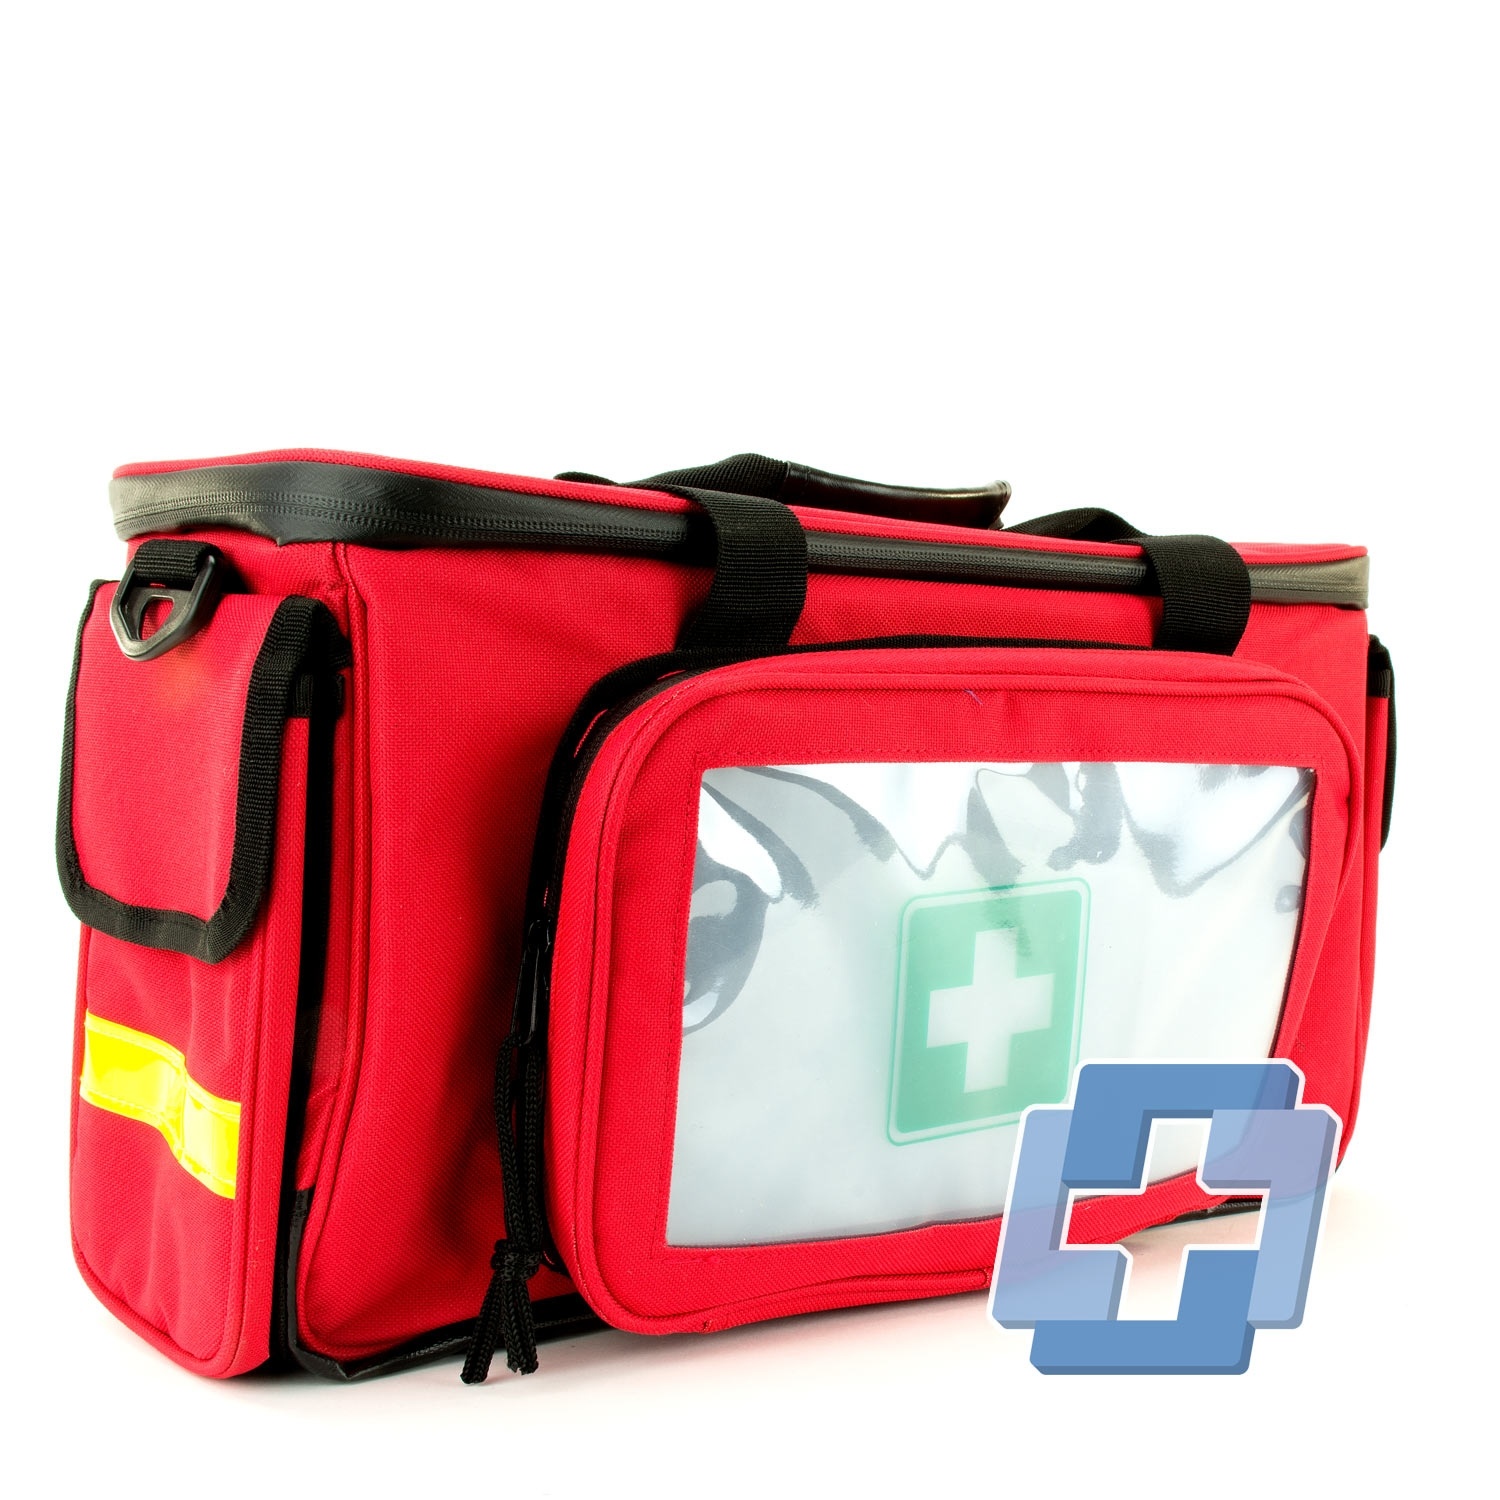 HEKA Erste Hilfe Sporttasche - Rot (leer)